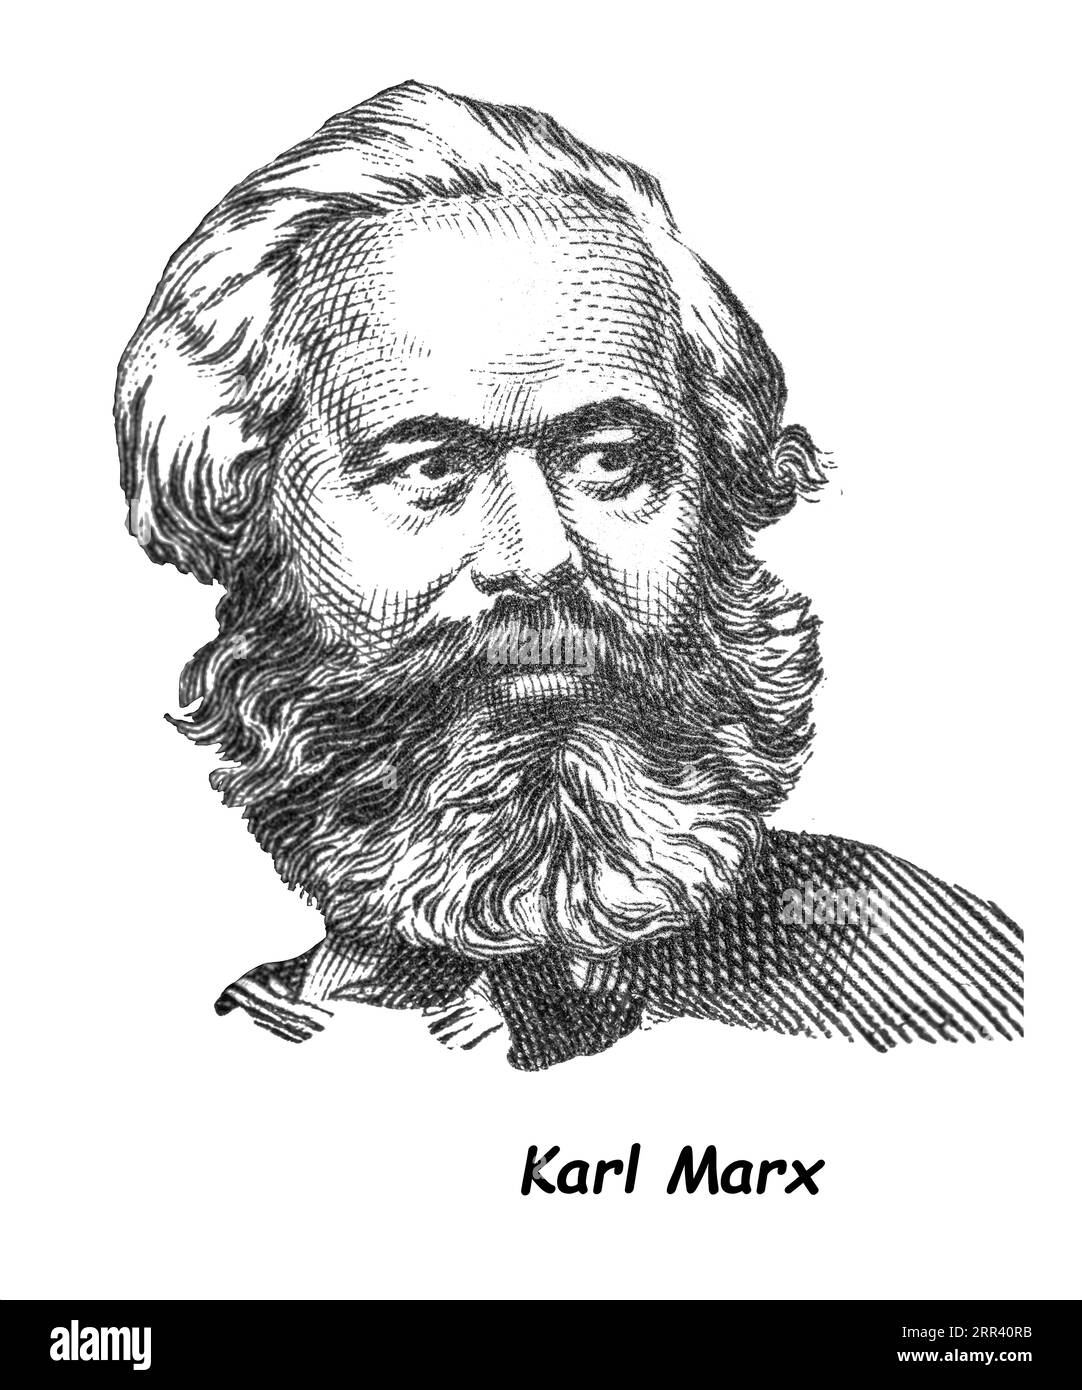 LUGA, RUSSLAND - 12. SEPTEMBER 2018: Eine von RUSSLAND (UdSSR) gedruckte Briefmarke zeigt Karl Marx - deutschen Philosophen, Ökonomen, Politiktheoretiker, Soziologen, Stockfoto